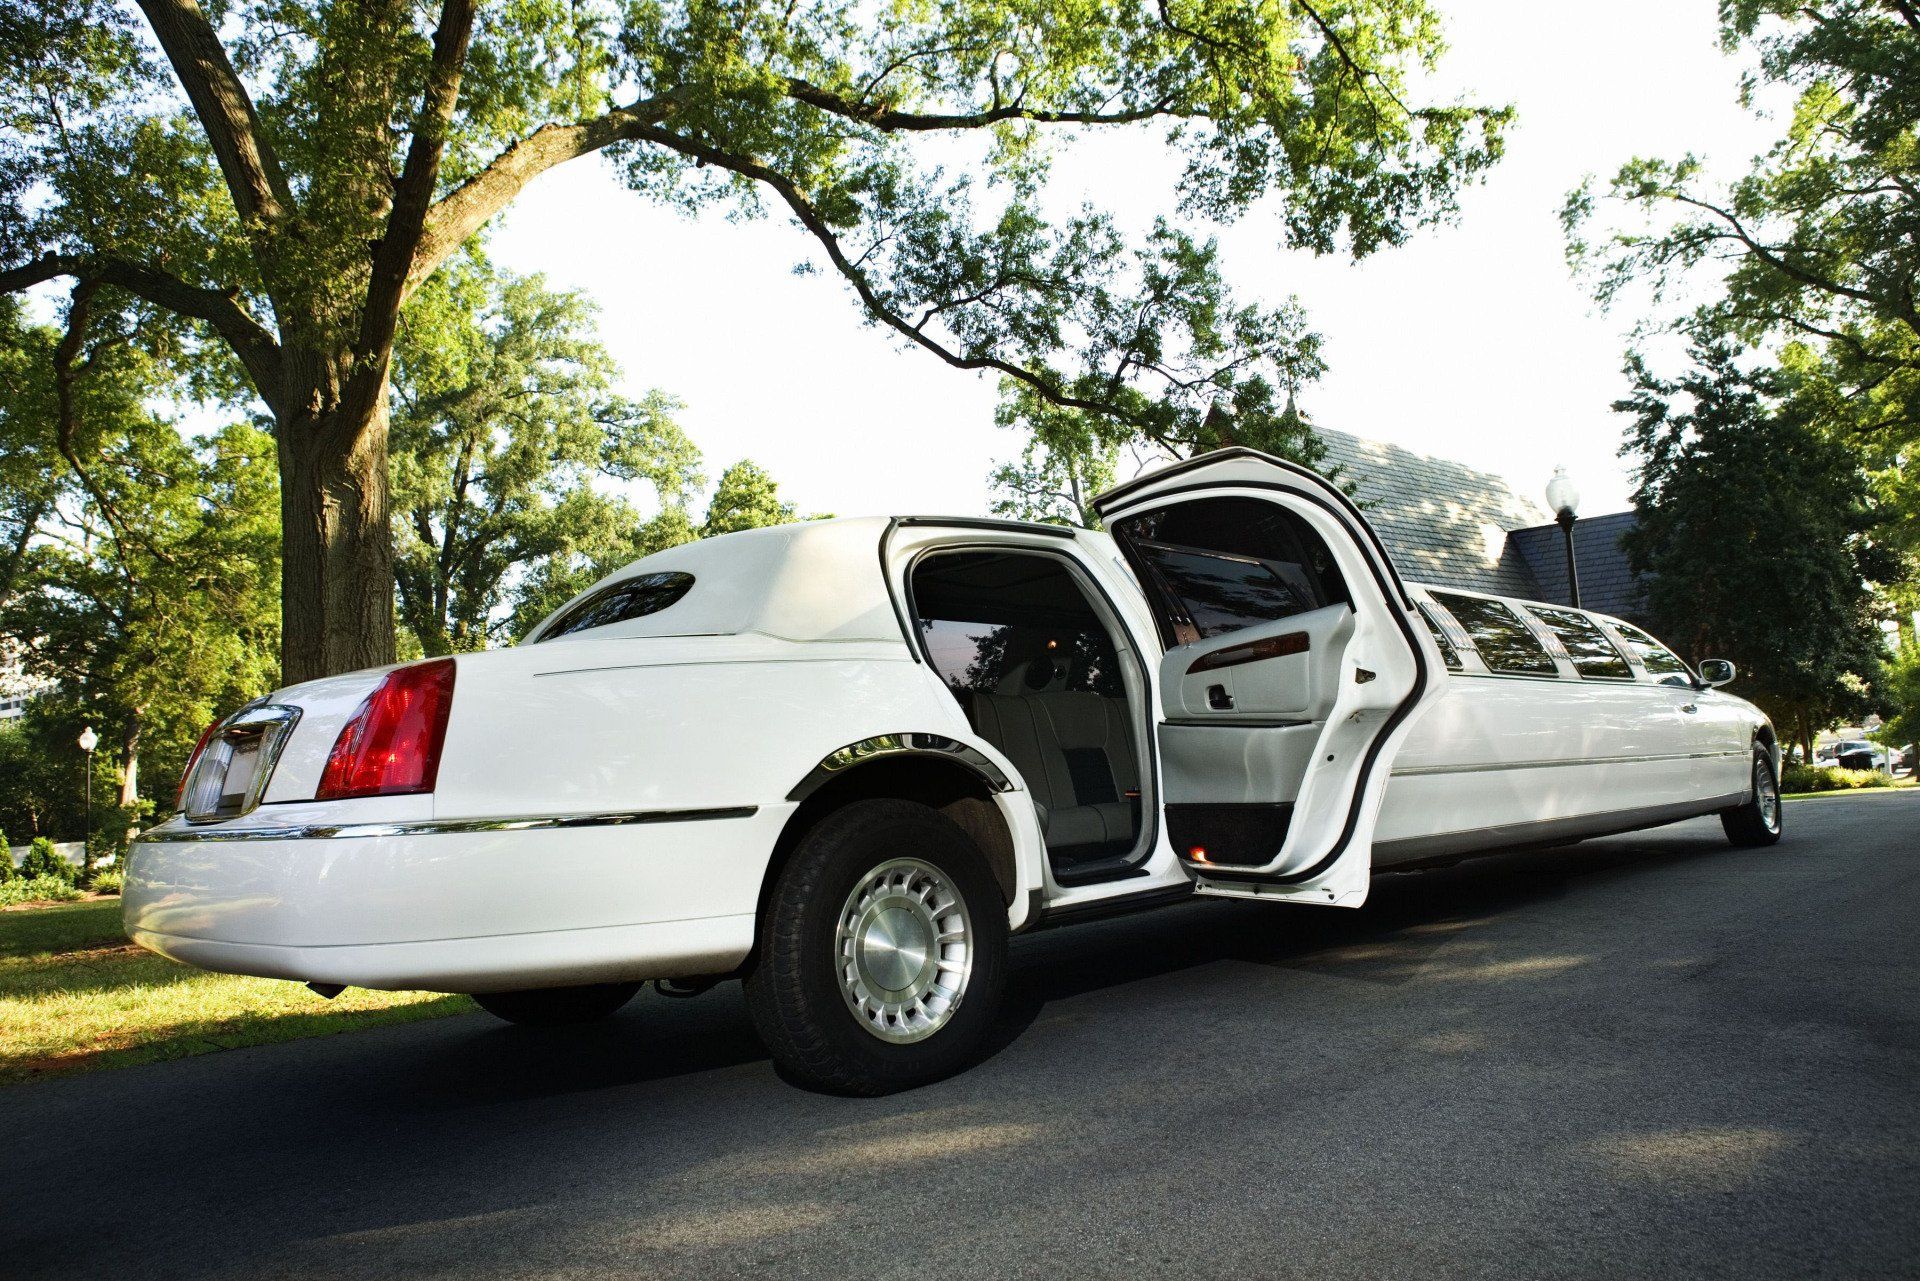 limousine service new orleans